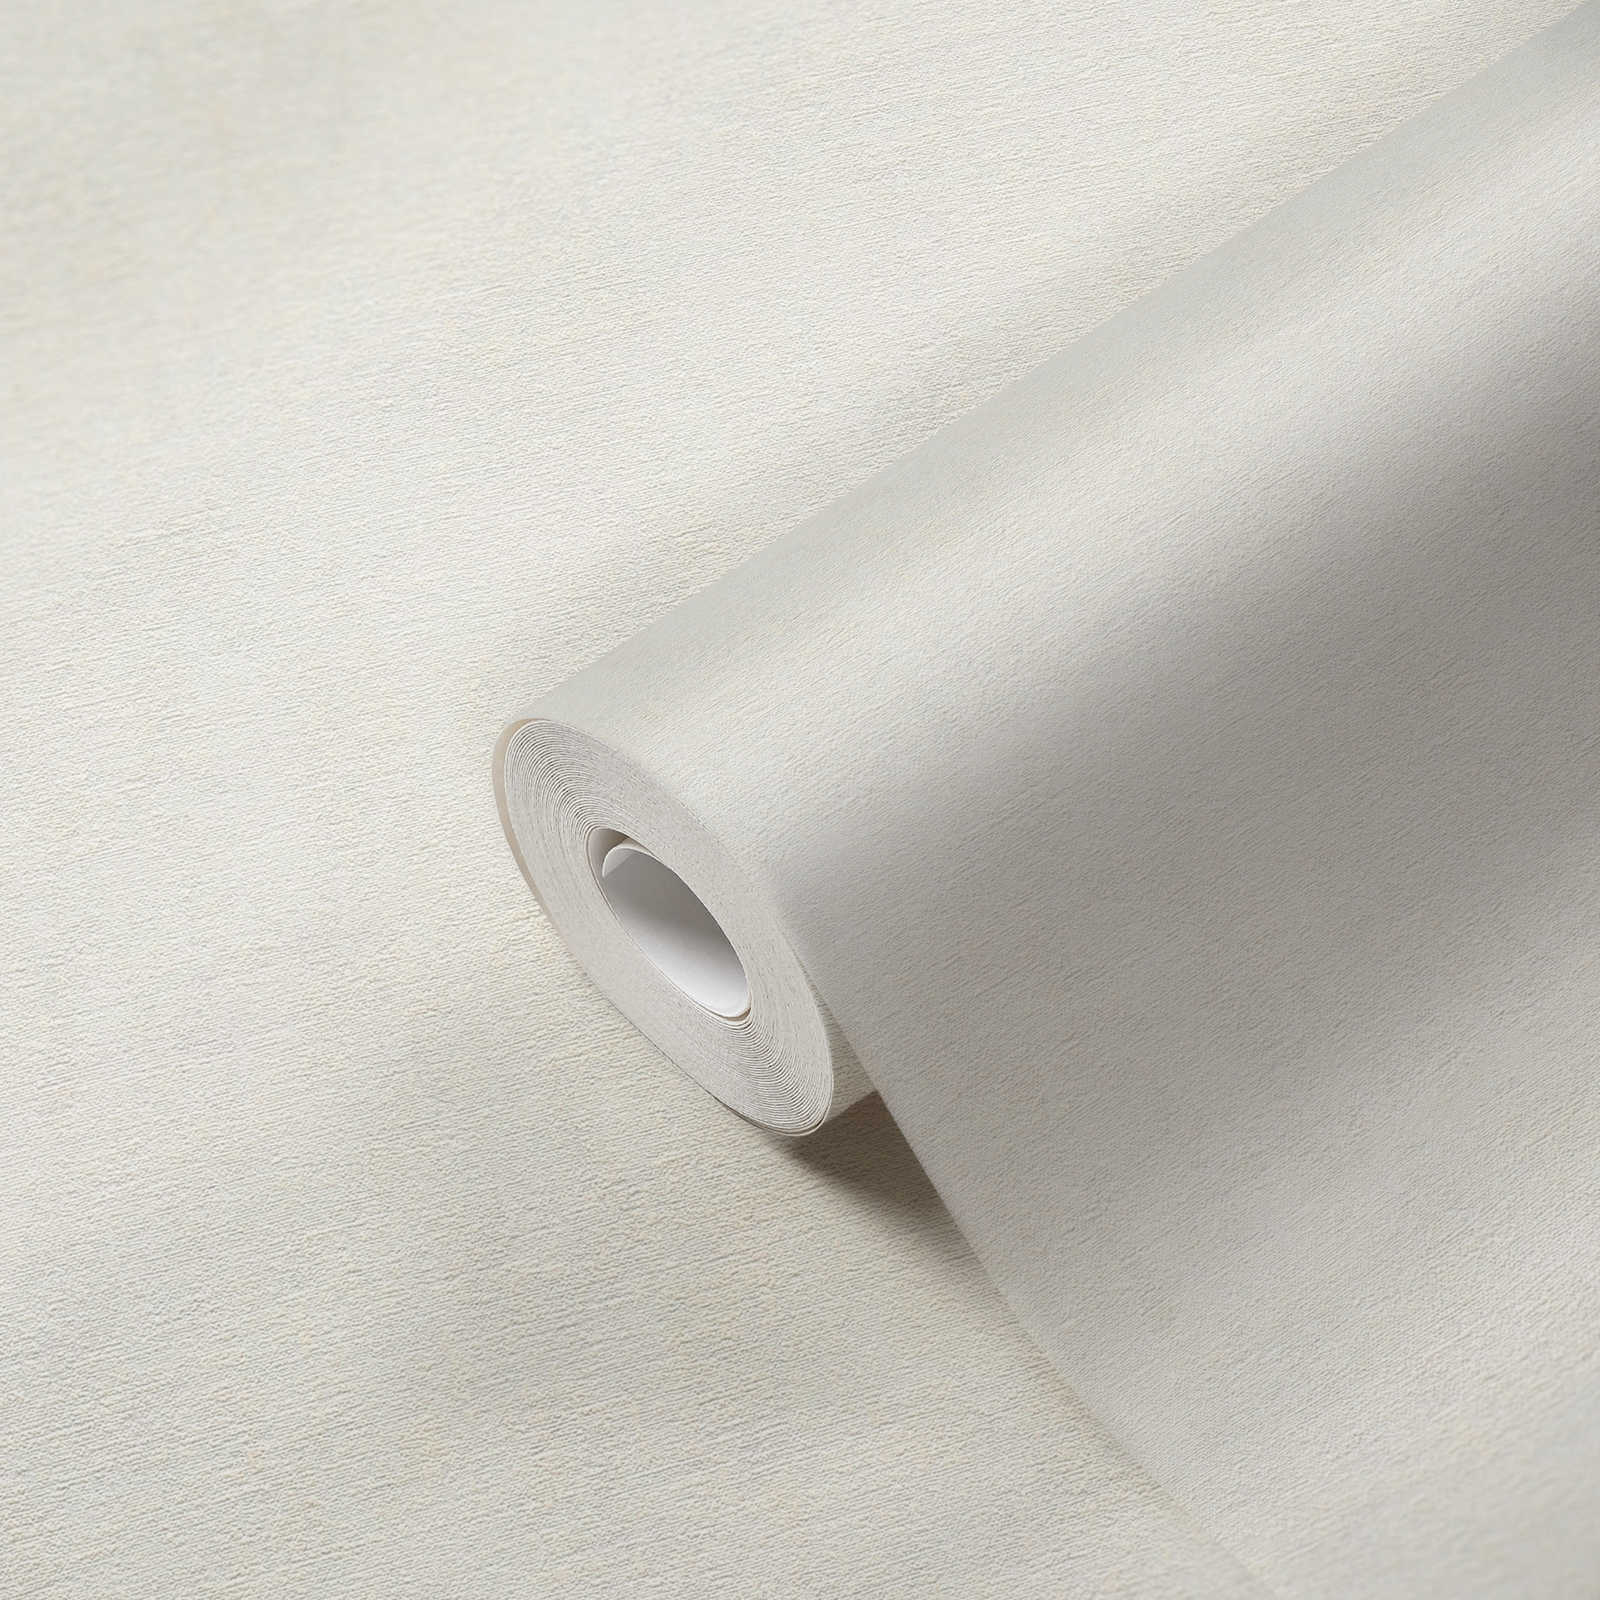             Vliesbehang in een effen kleur - wit
        